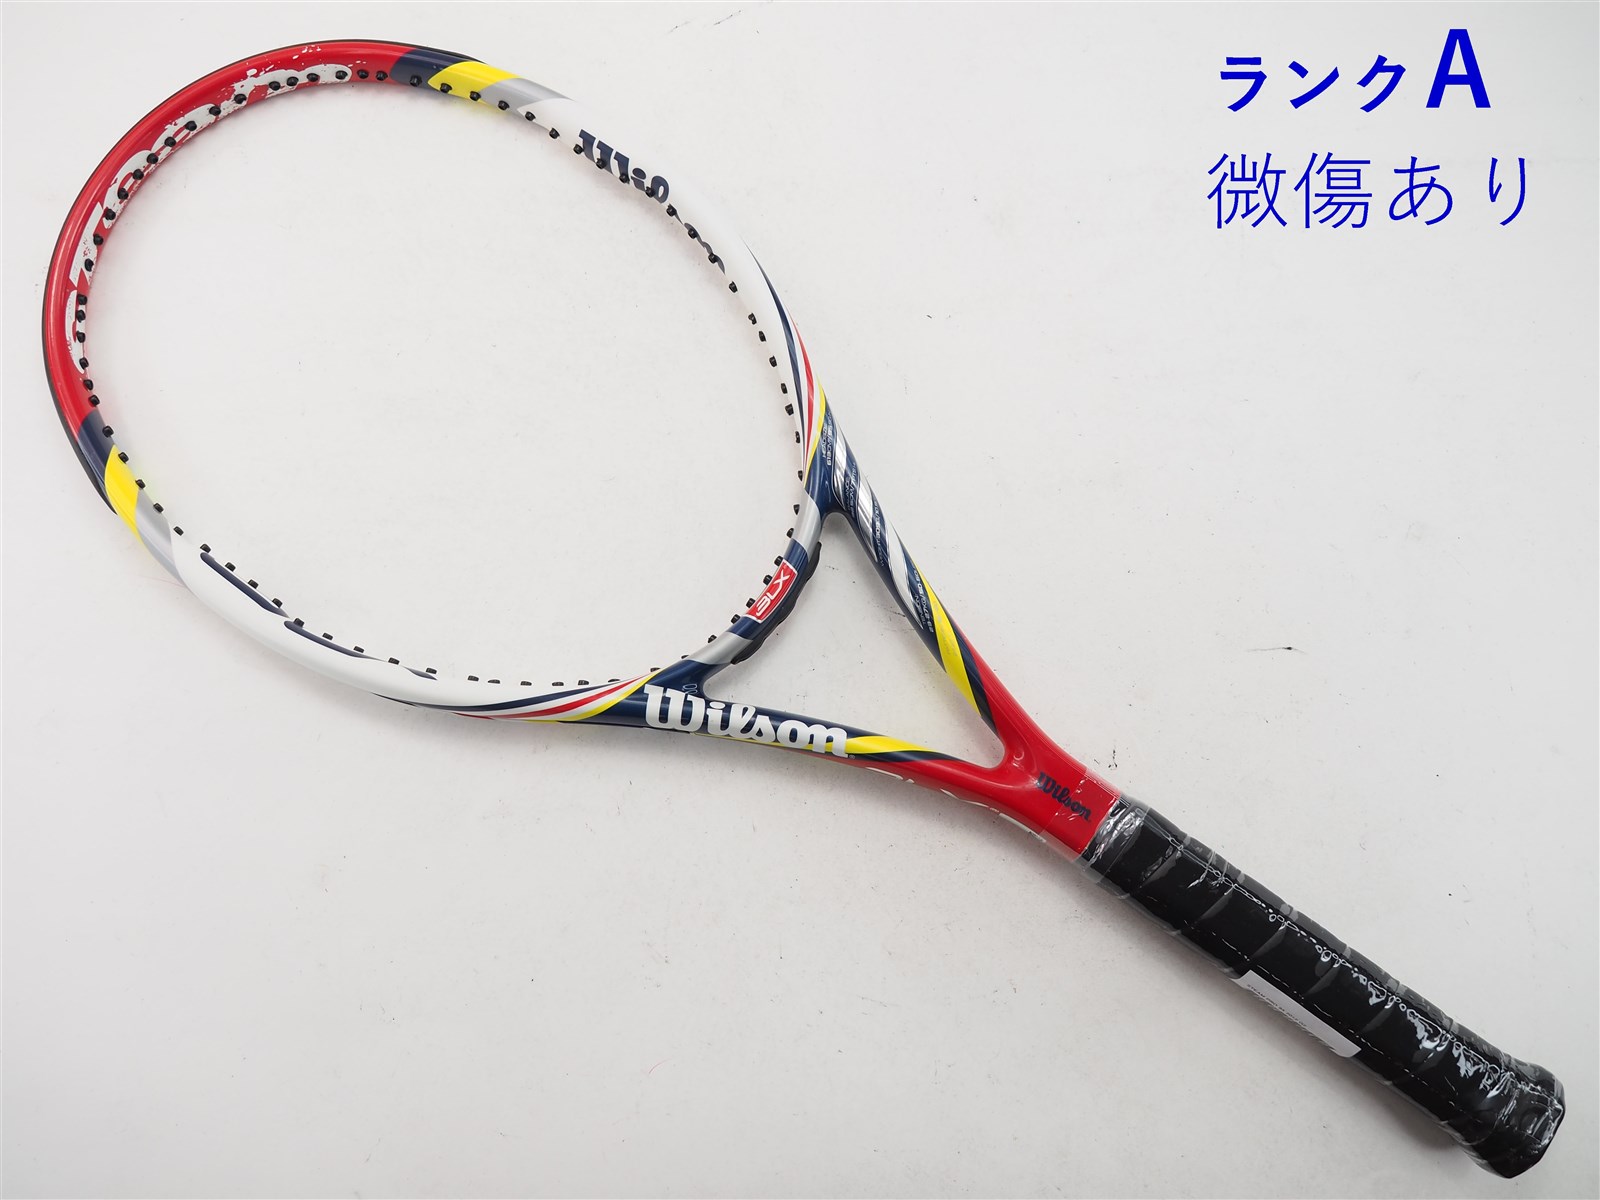 291ｇ張り上げガット状態テニスラケット ウィルソン スティーム 95 2012年モデル (G2)WILSON STEAM 95 2012